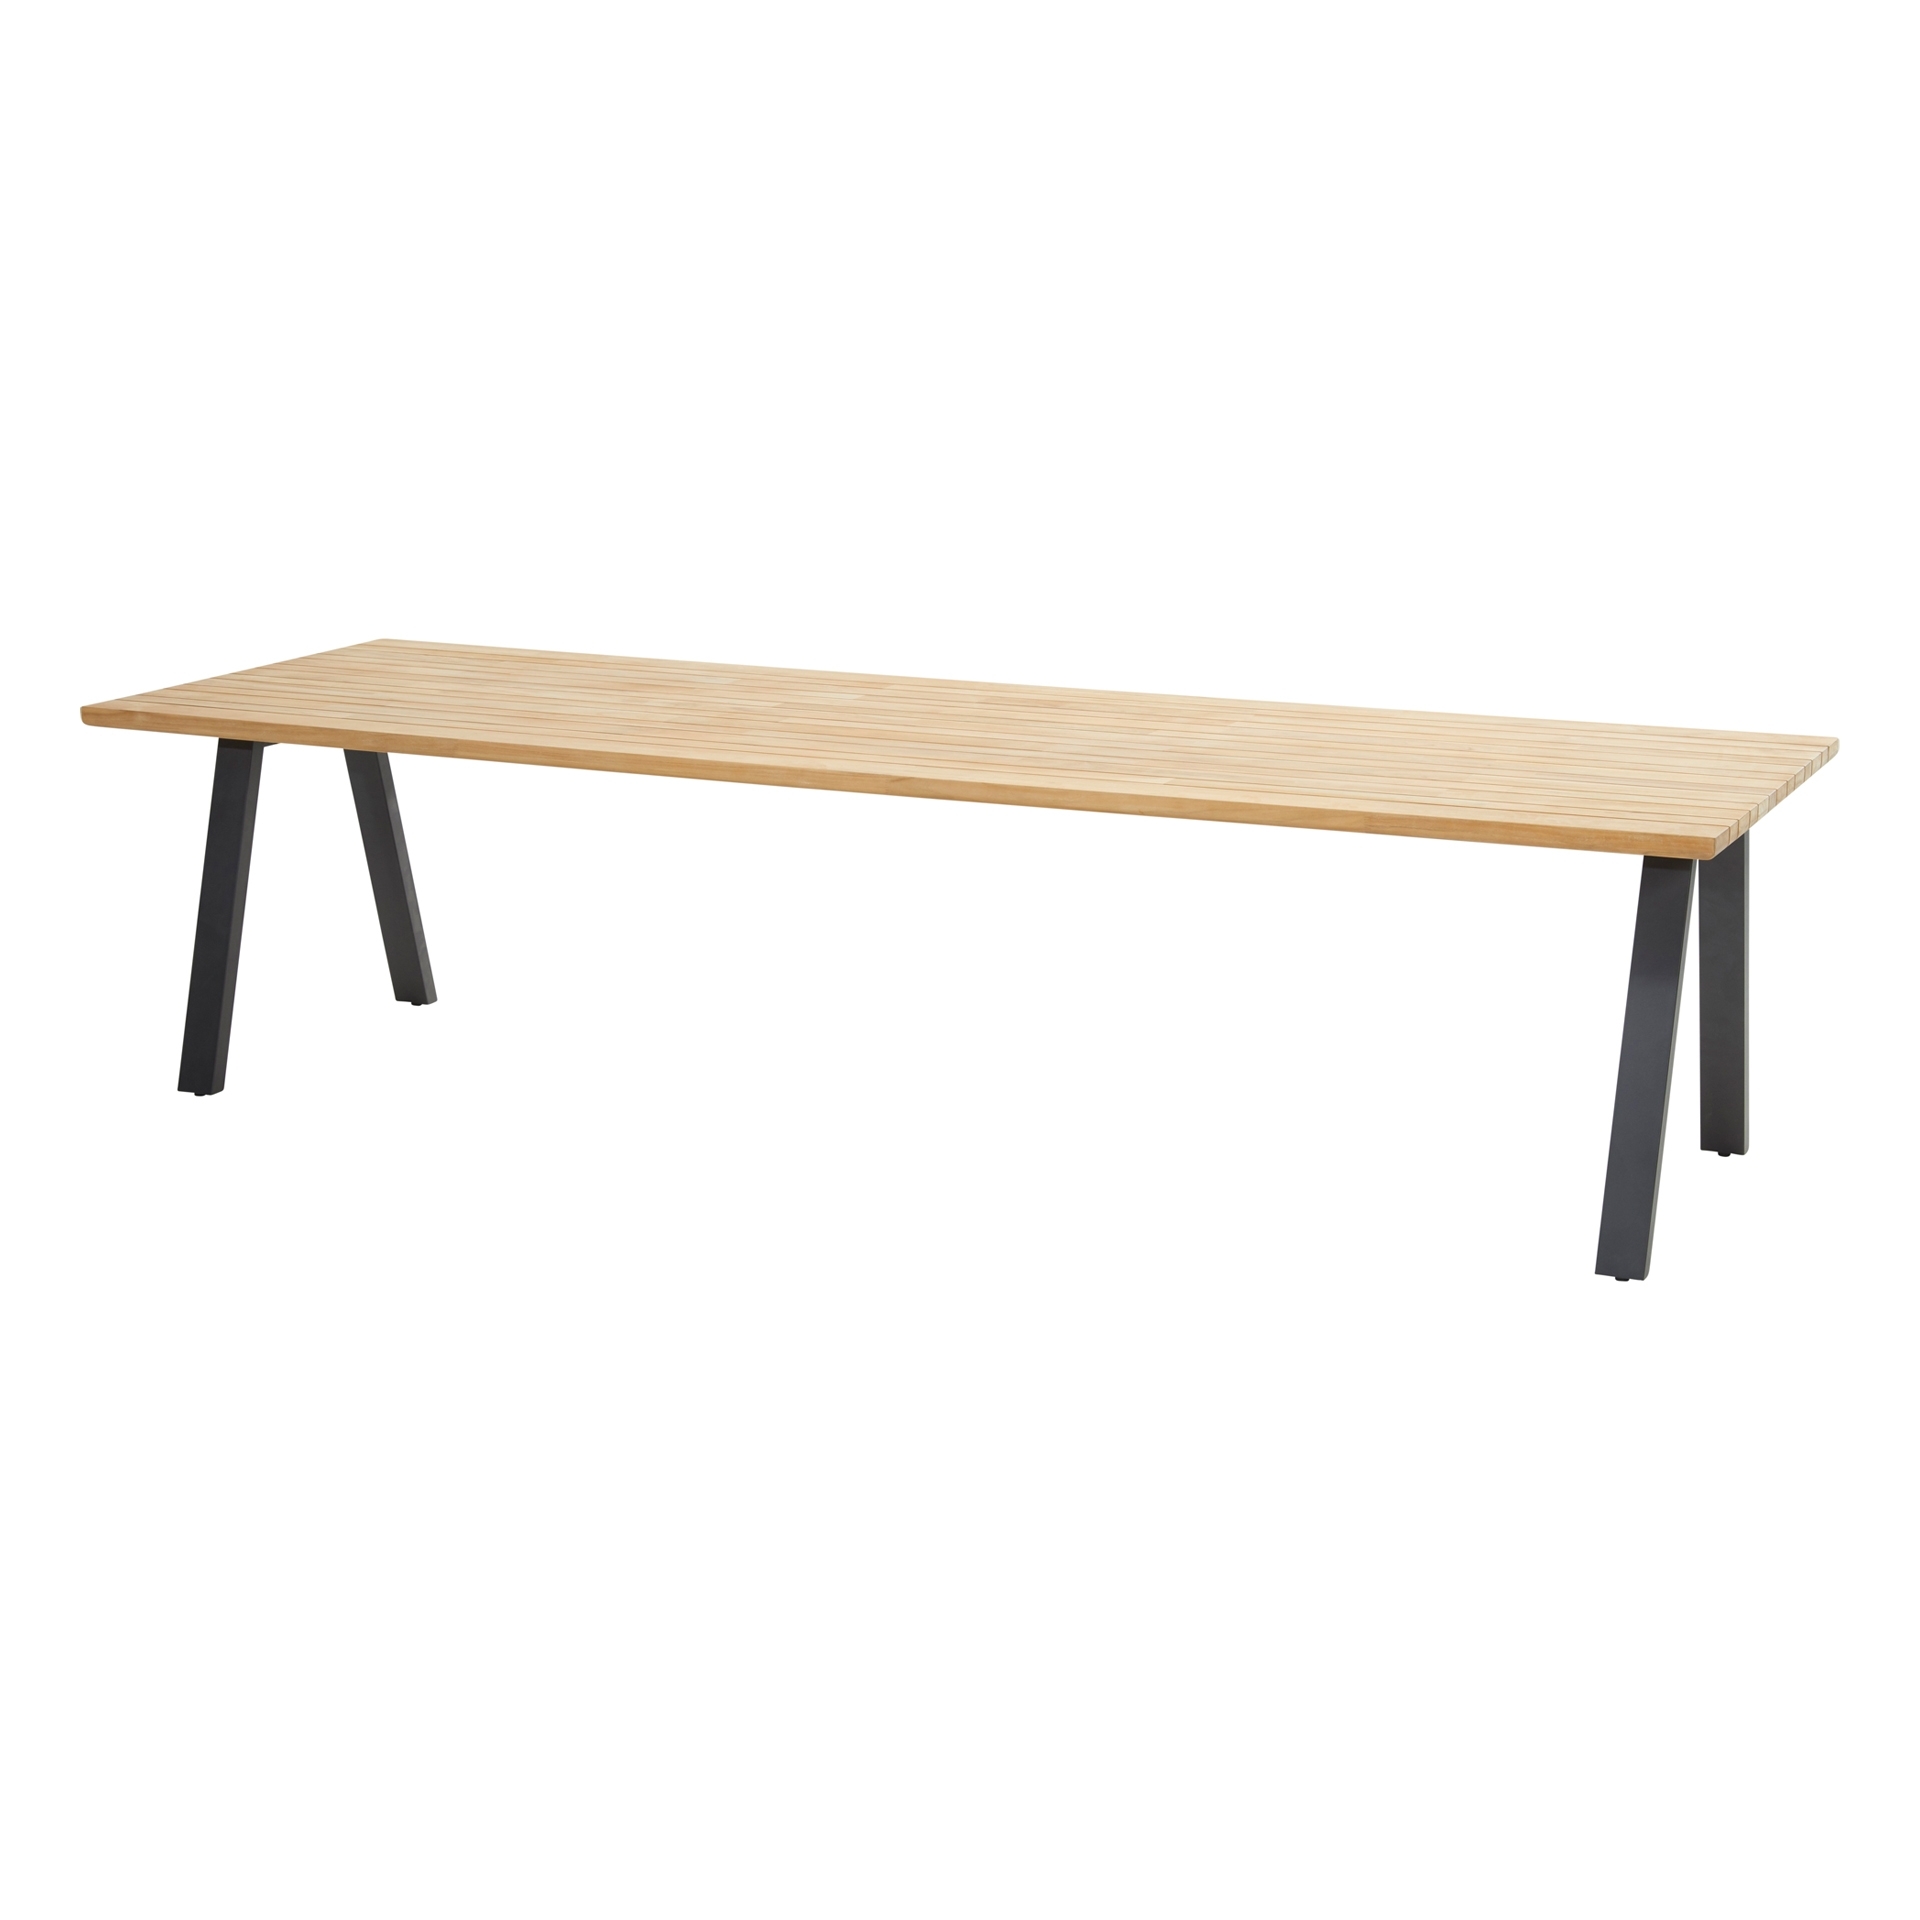 Ambassador set of legs for rectangular top Anthracite + Ambassador table top natural teak 300x100